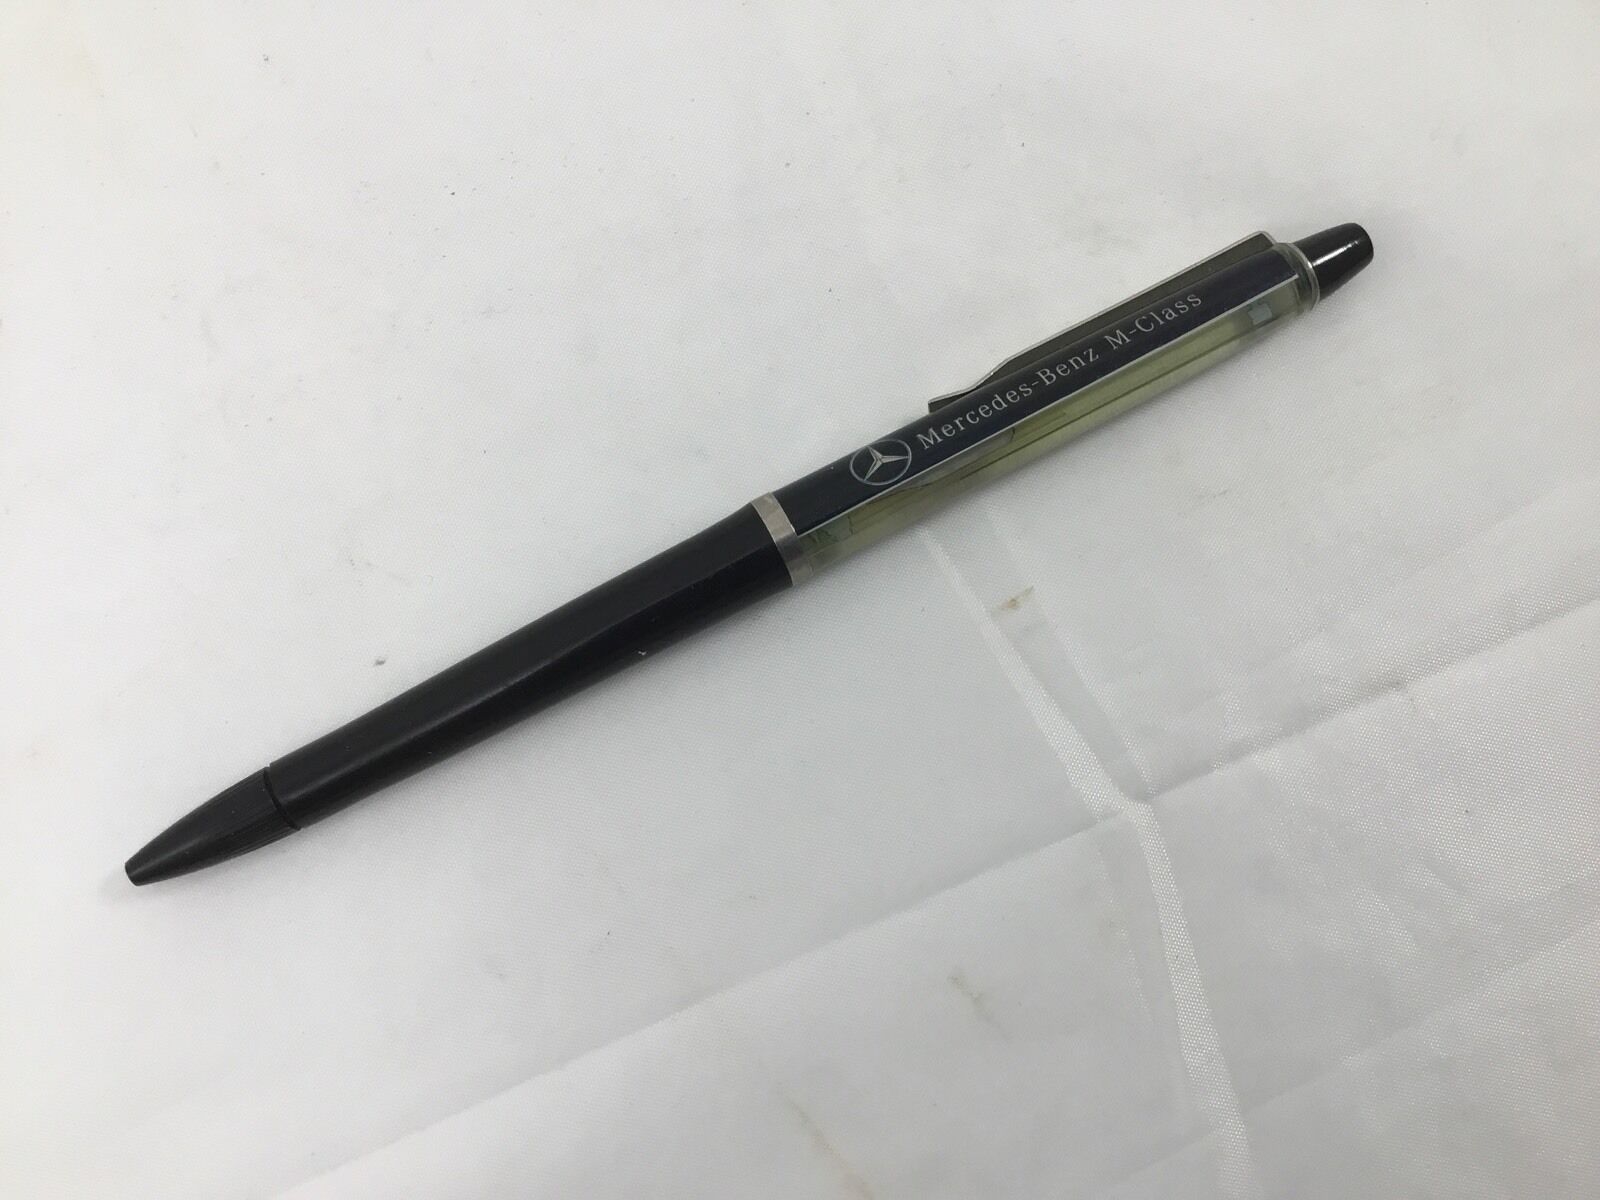 Mercedes Benz Ballpoint Pen M Class Limited Edition Pen From 1996